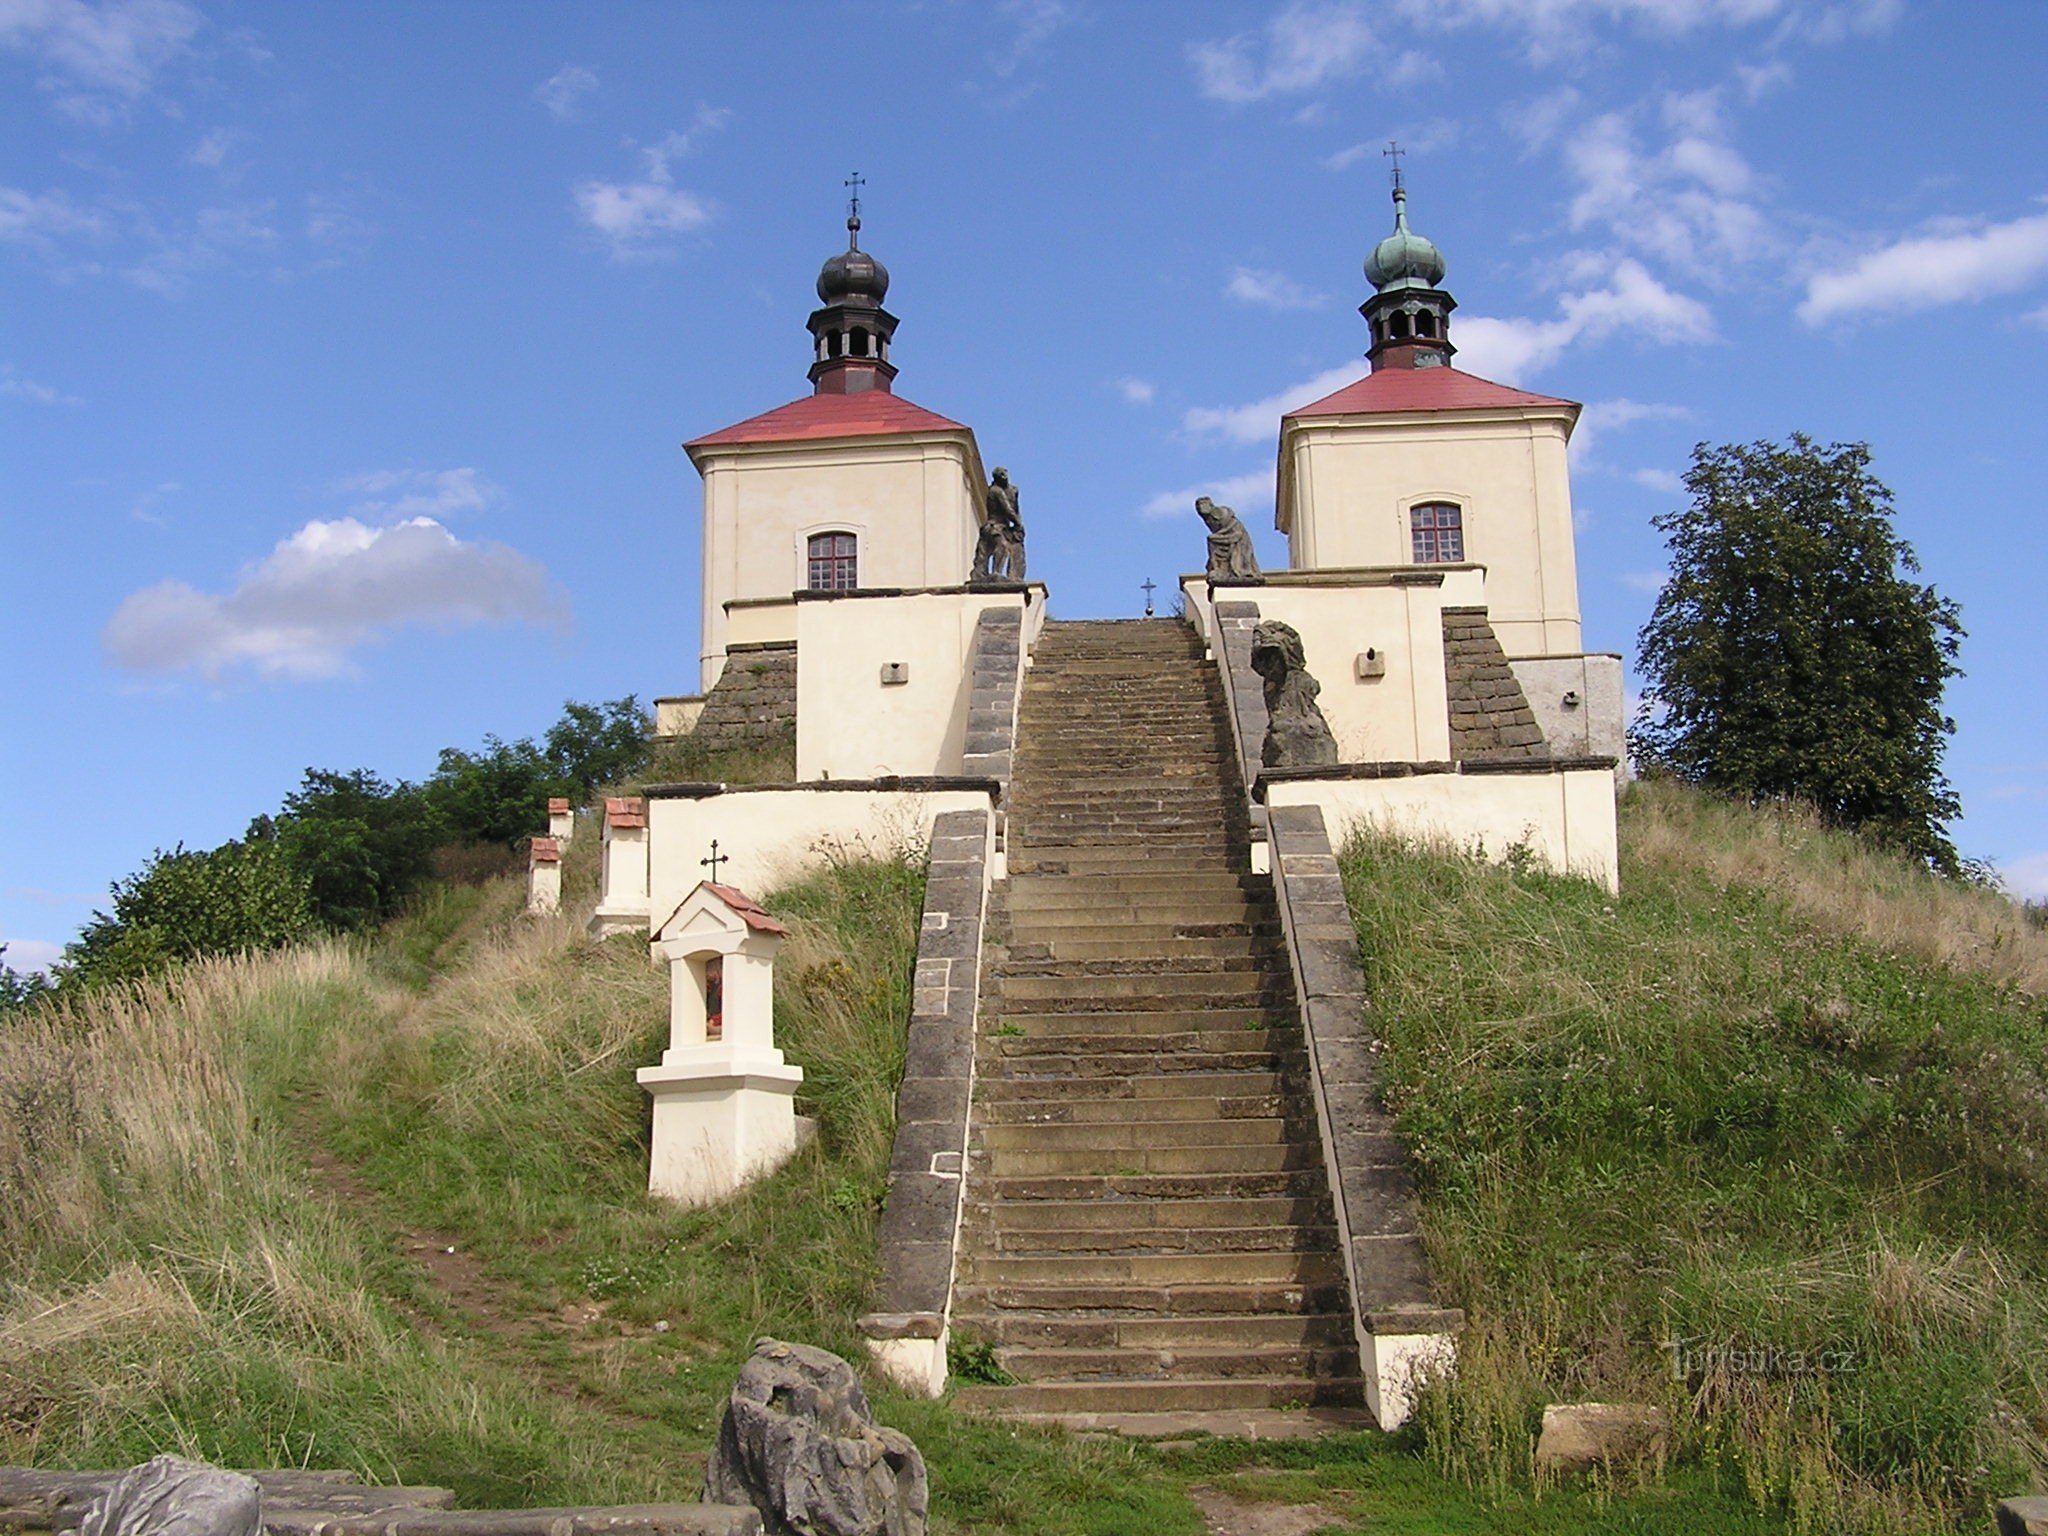 Ostré near Úštěk (8/2014)